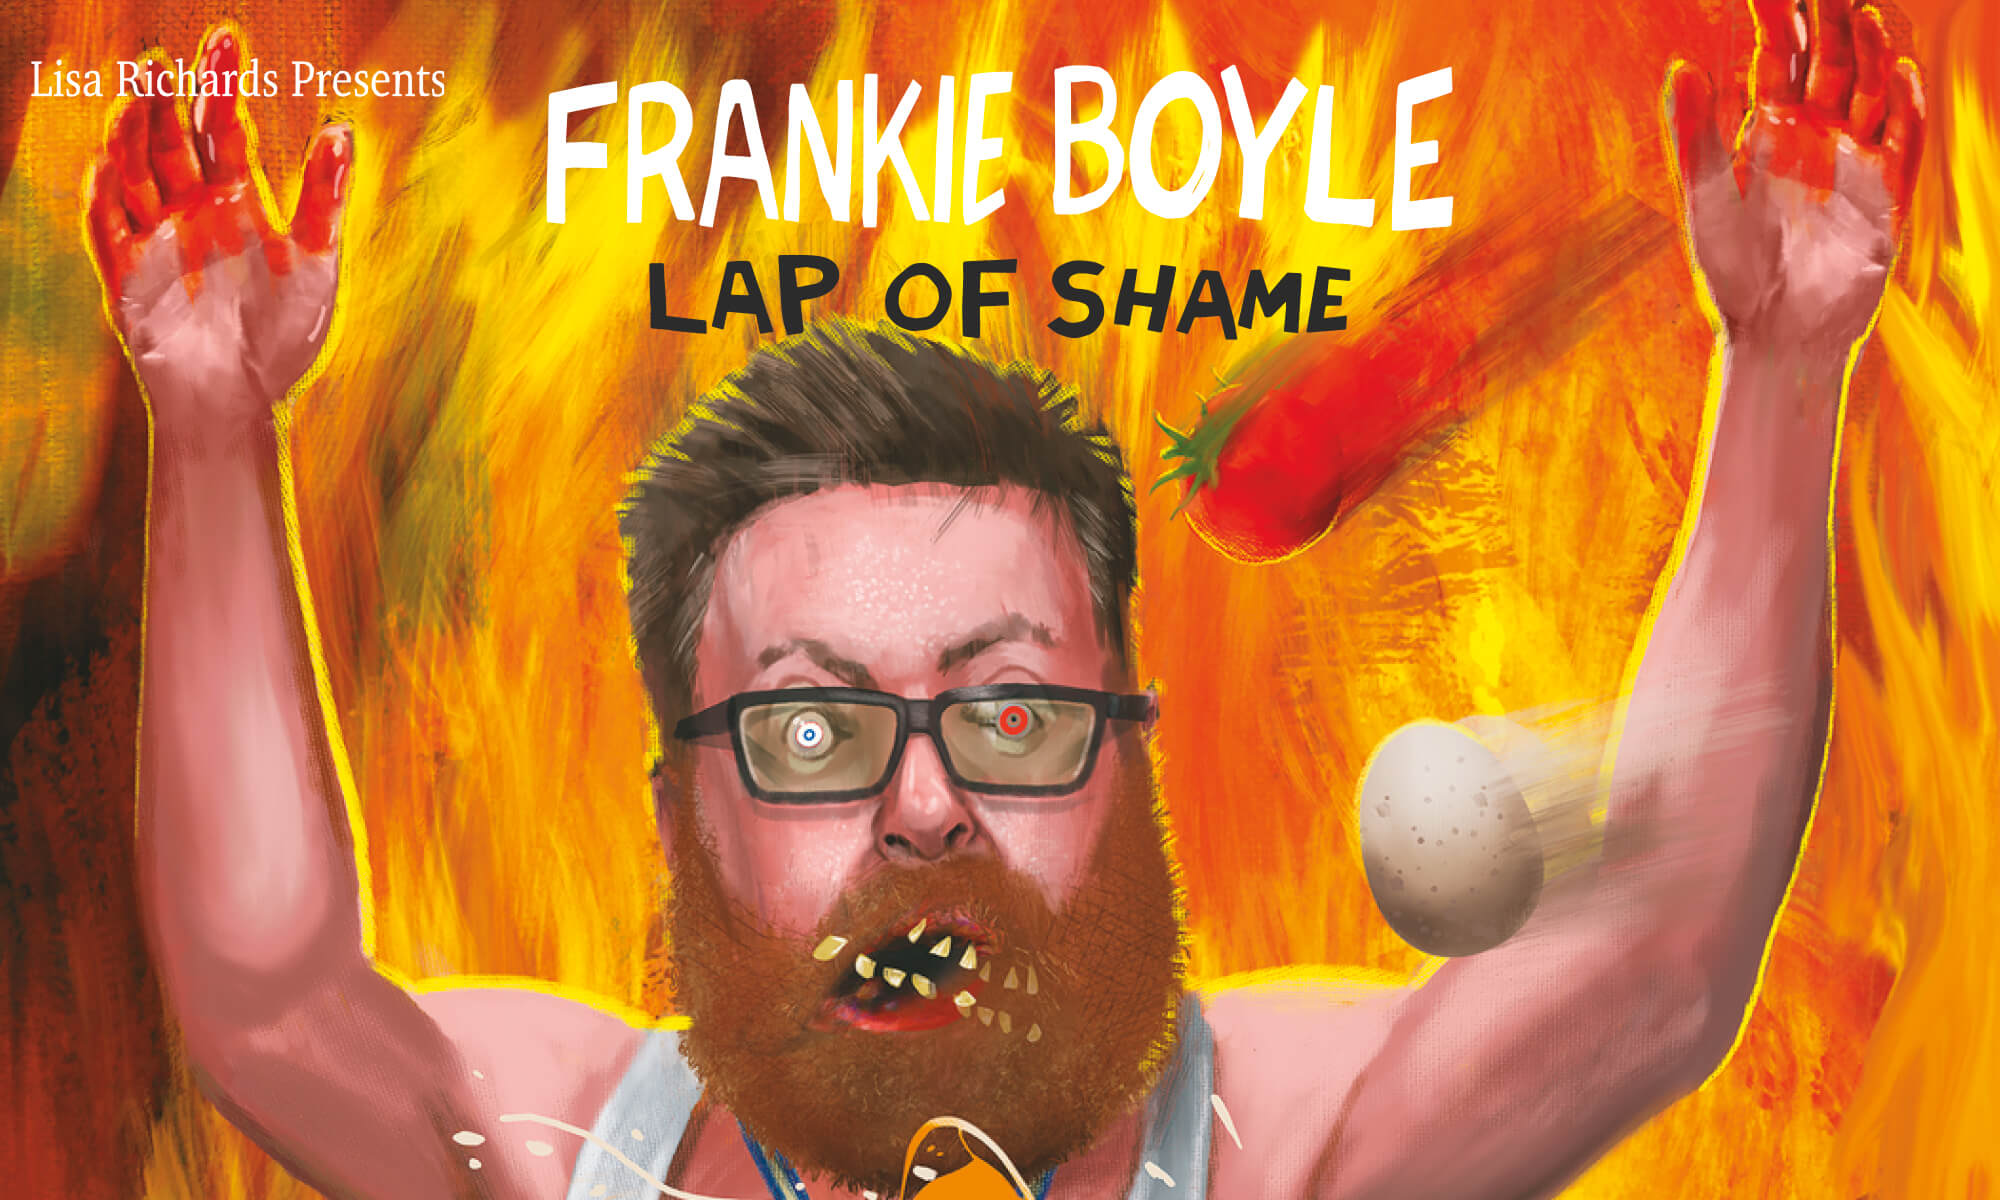 Frankie Boyle